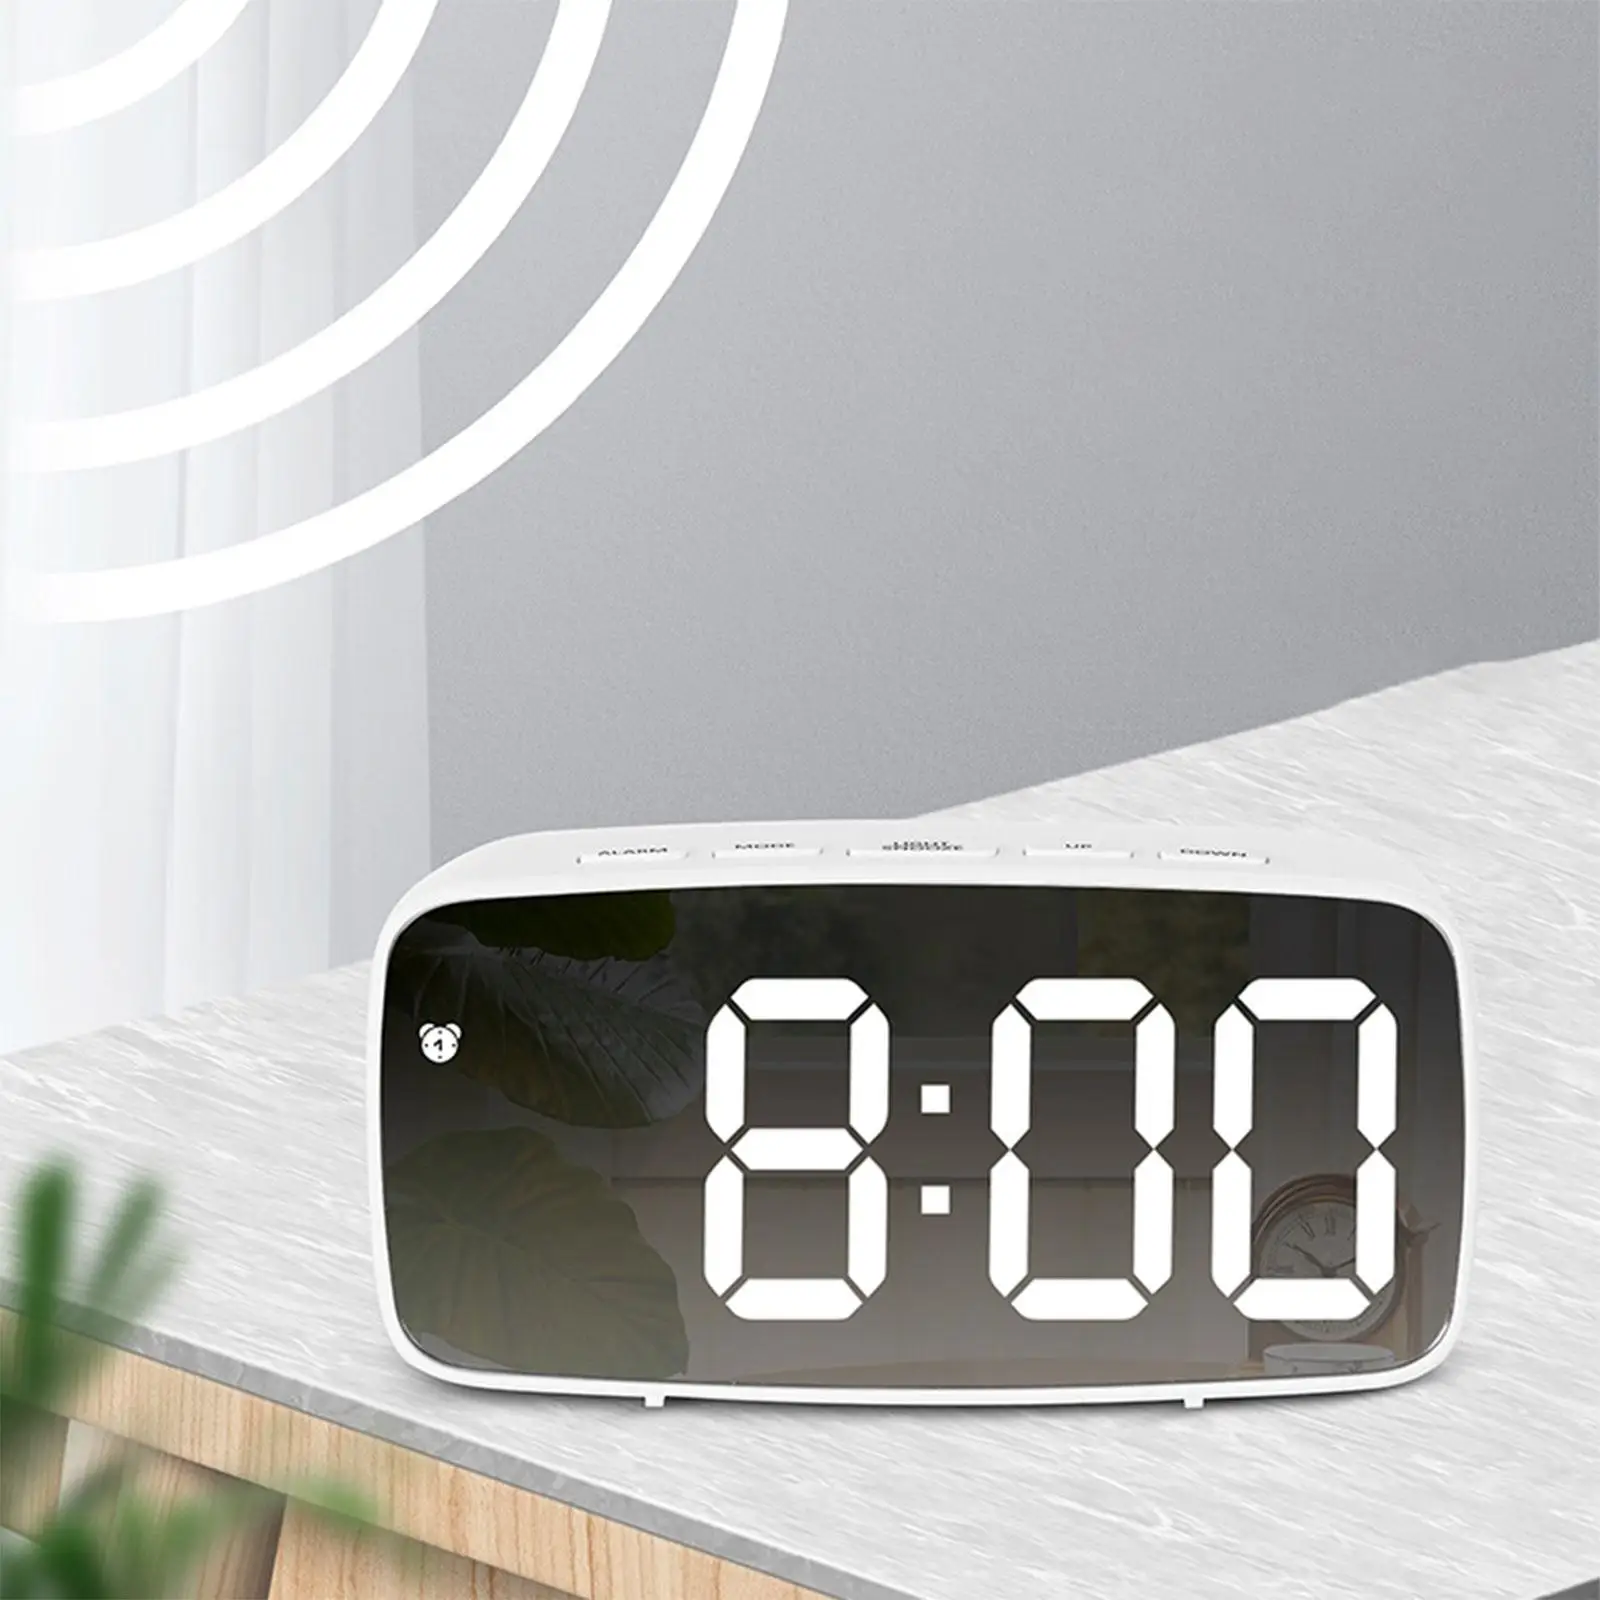 Digital LED Alarm Clock Mirror Desktop 2-Level Brightness Snooze ARC Display Clock for Bedroom Makeup Bedside Kids 12/24 HR